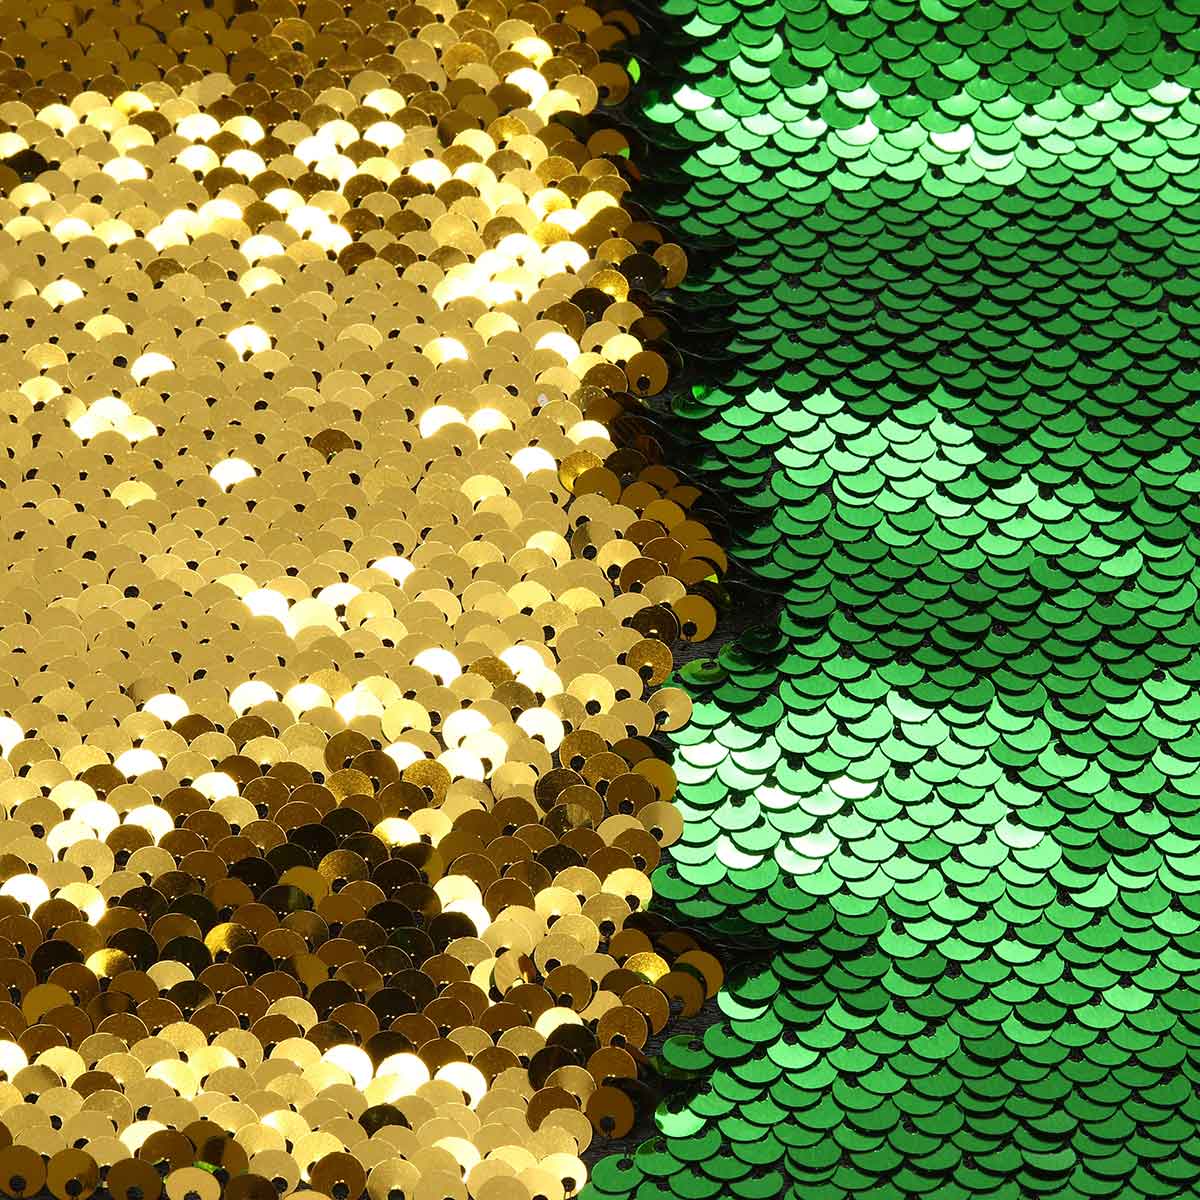 Ткань с двухсторонними пайетками, зеленый/золото, 65*50см Астра Астра 7728257